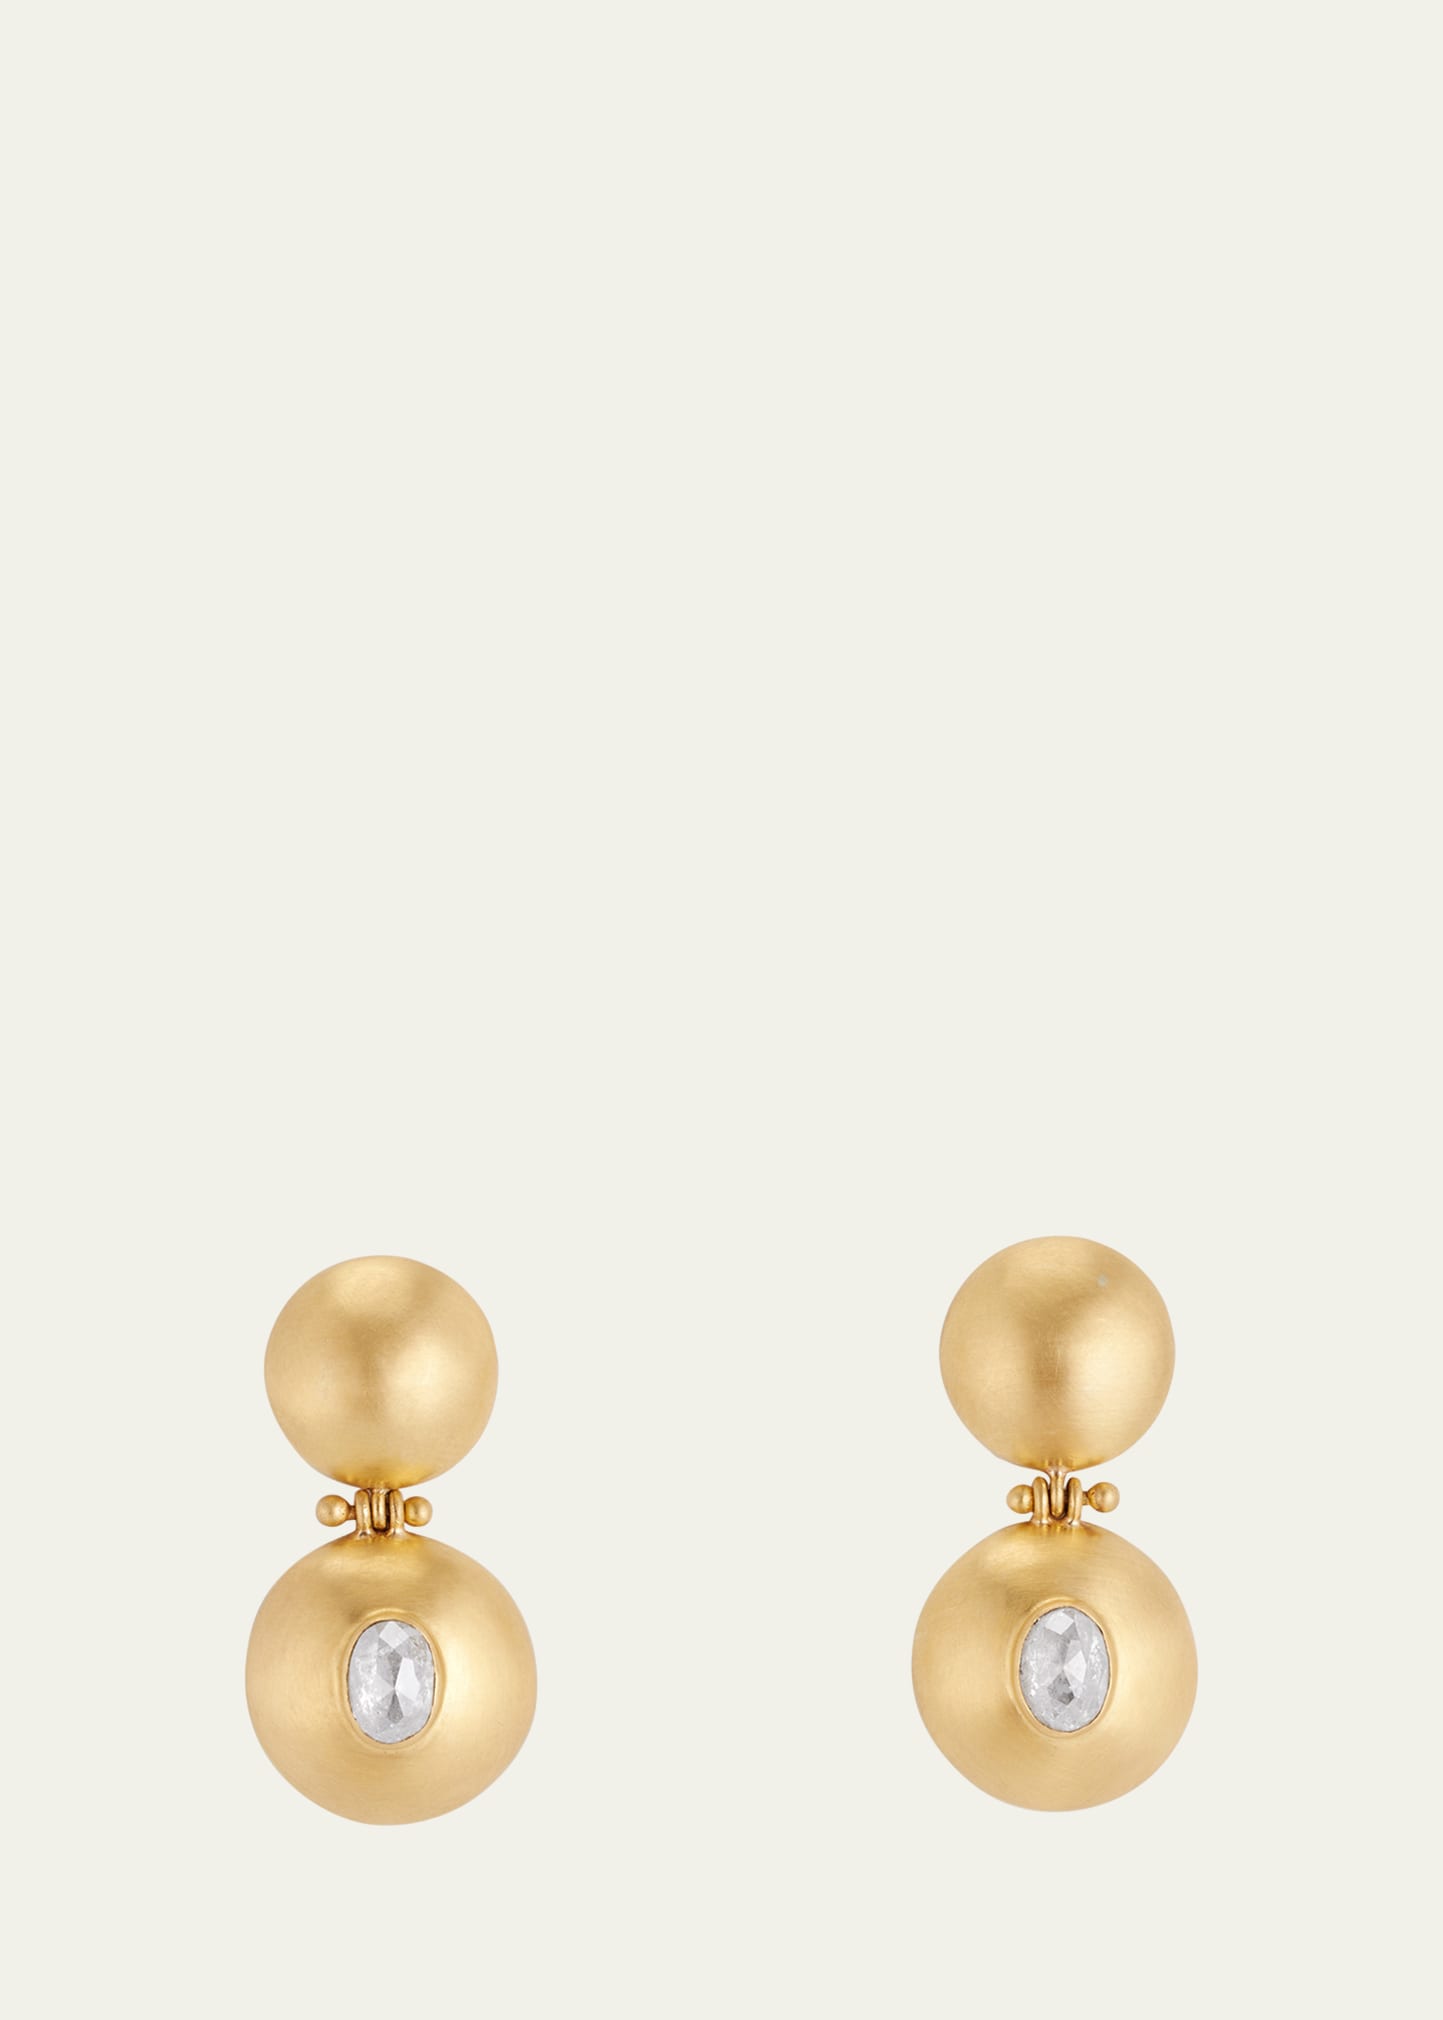 Small Diamond Bulla Hook Earrings